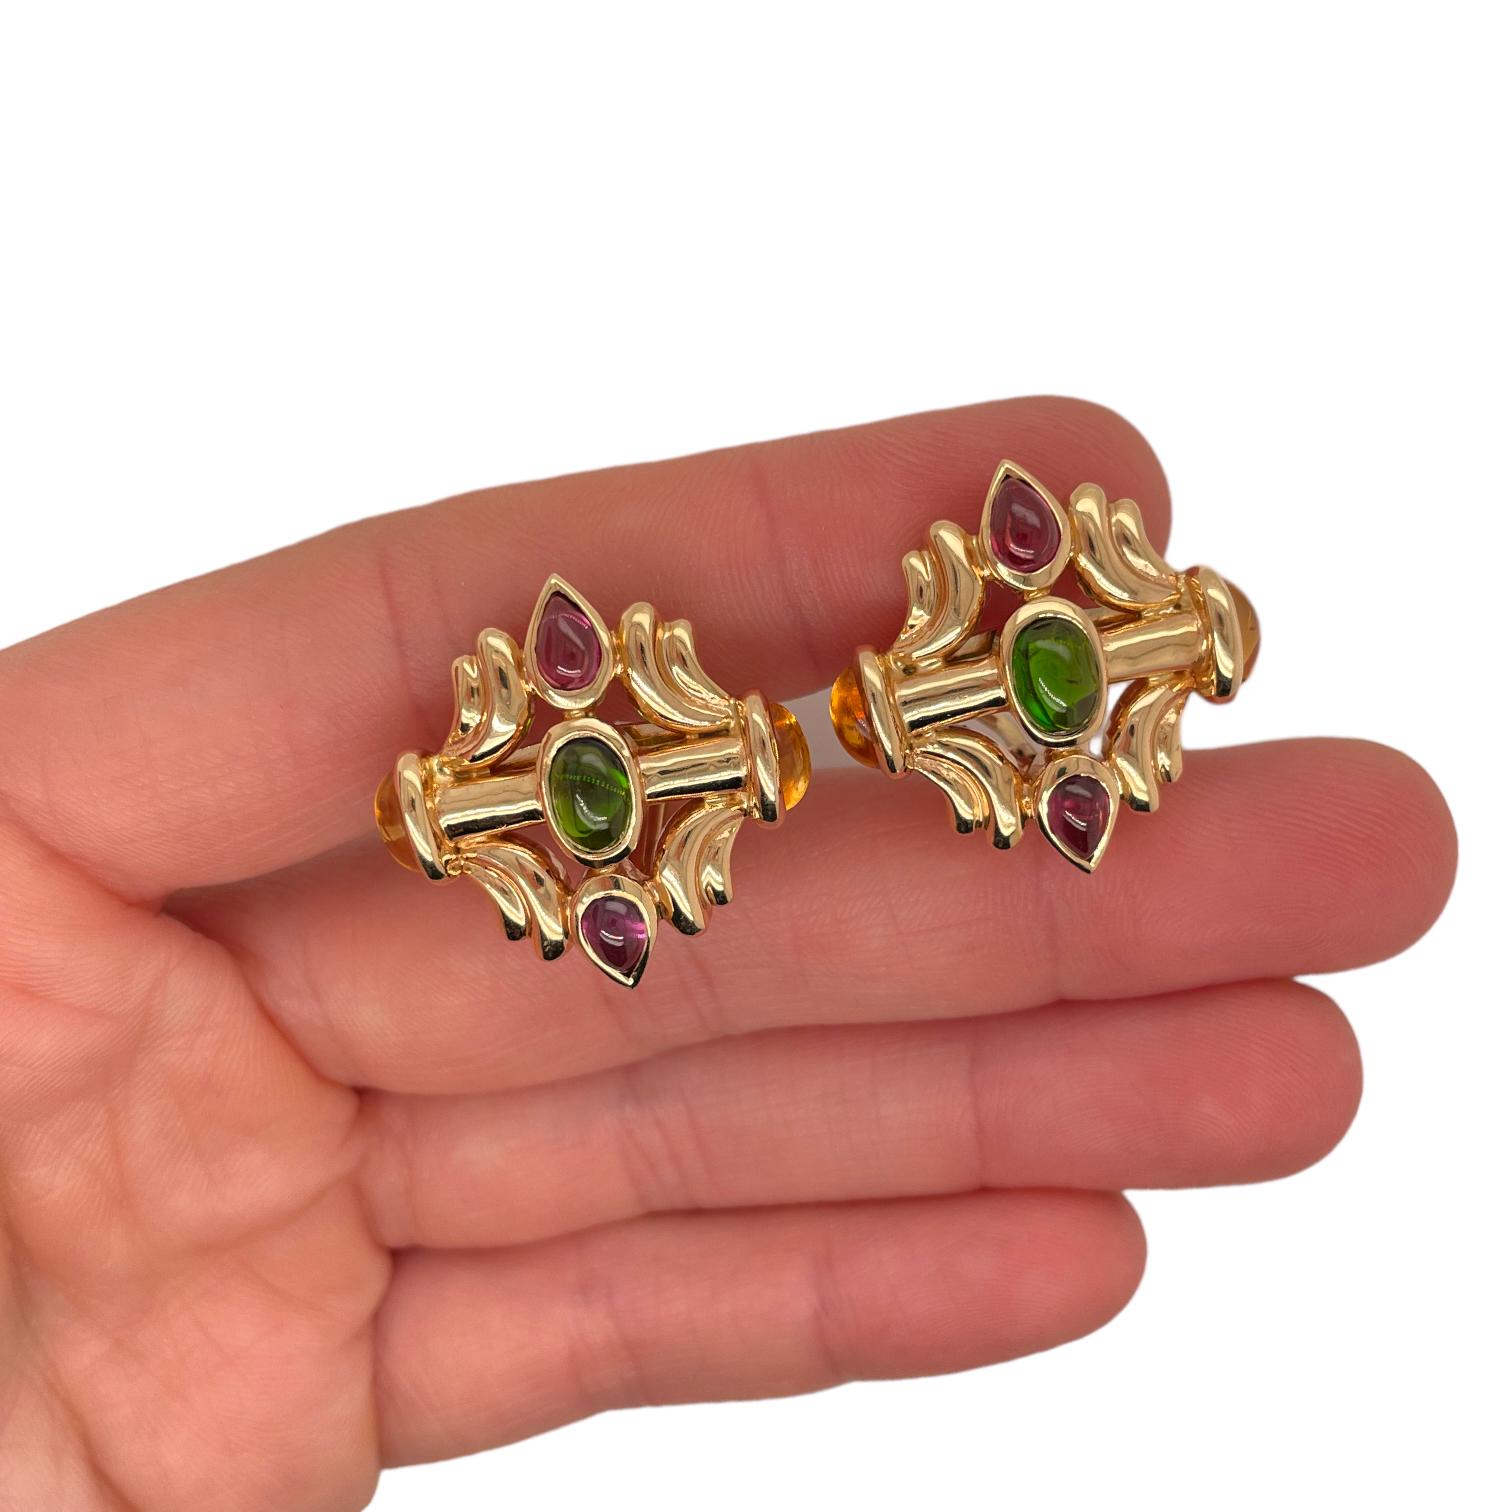 Die Vintage-Ohrringe enthalten zwei ovale Cabochon-Grünturmaline, vier ovale Cabochon-Citrine und vier birnenförmige Cabochon-Rosa-Turmaline, etwa 8,00cts. Die Steine sind in Lünettenfassungen montiert. 
Der Ohrring wiegt ungefähr 18,2 Gramm.